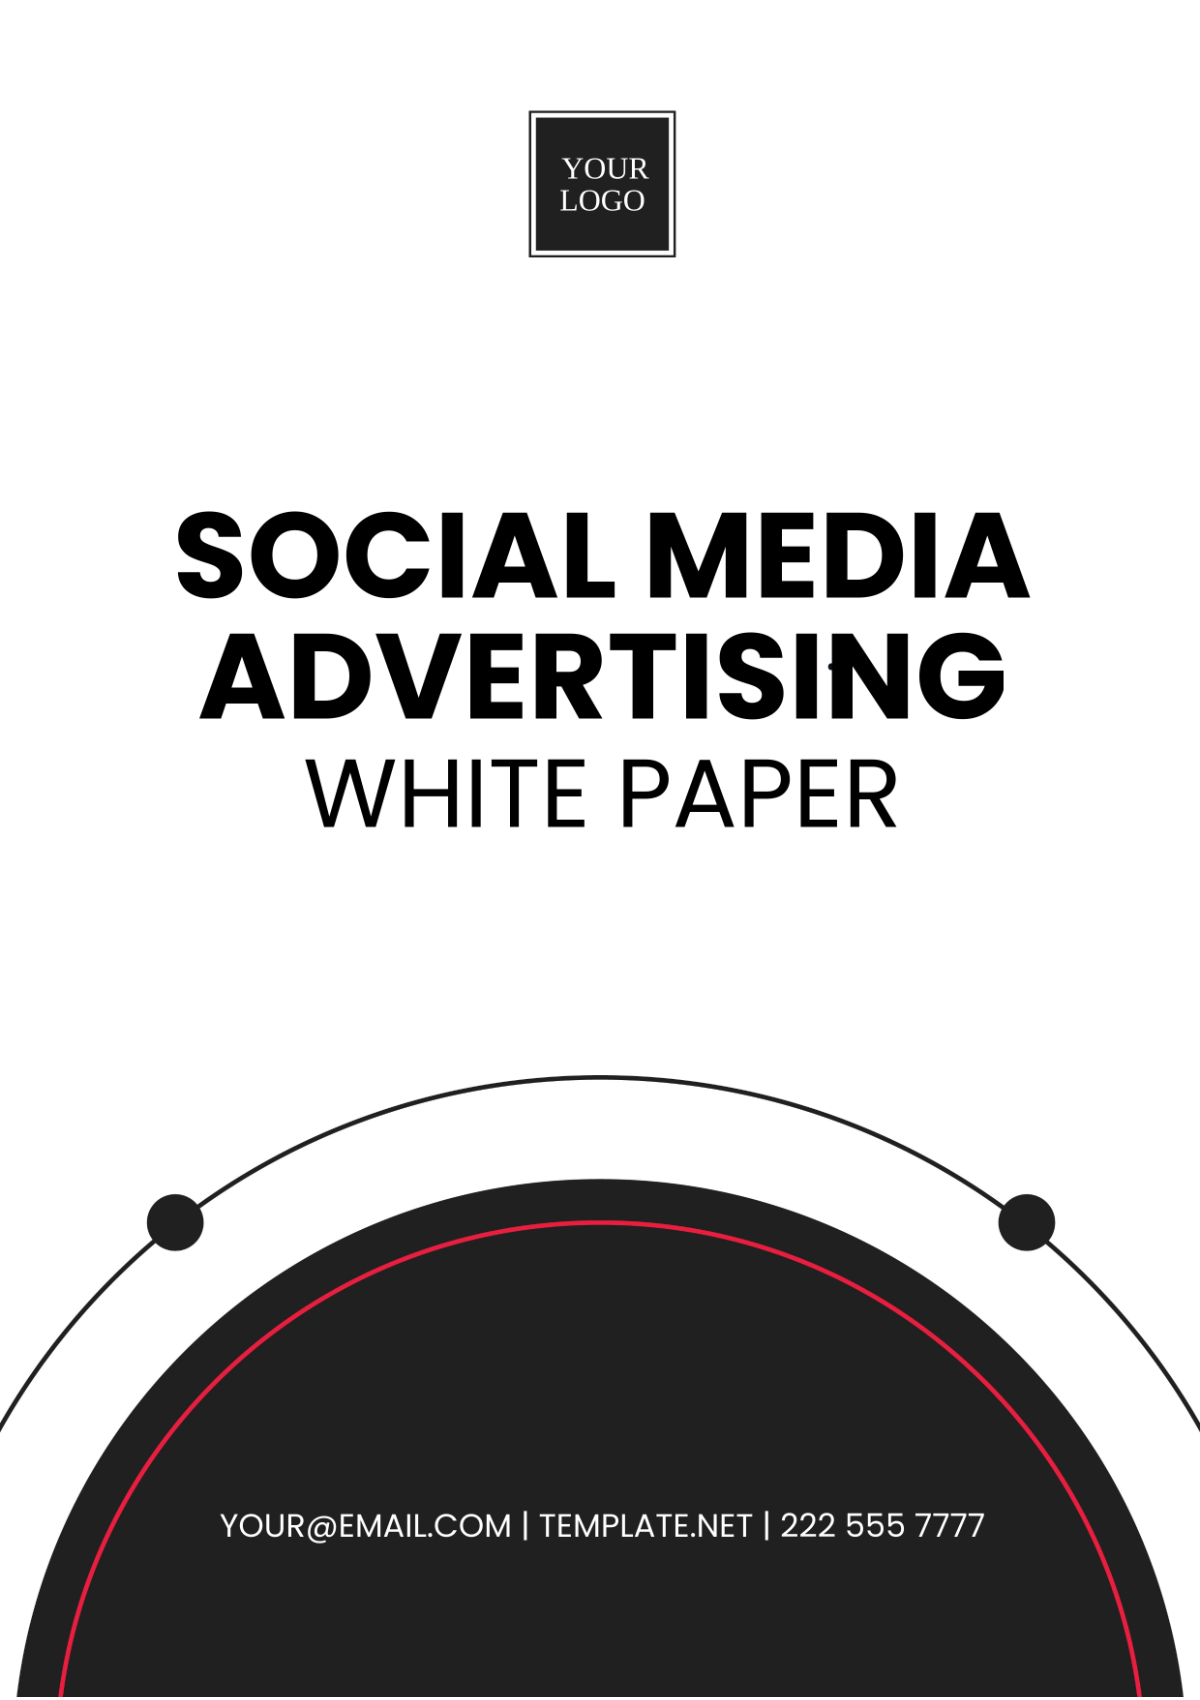 Social Media Advertising White Paper Template